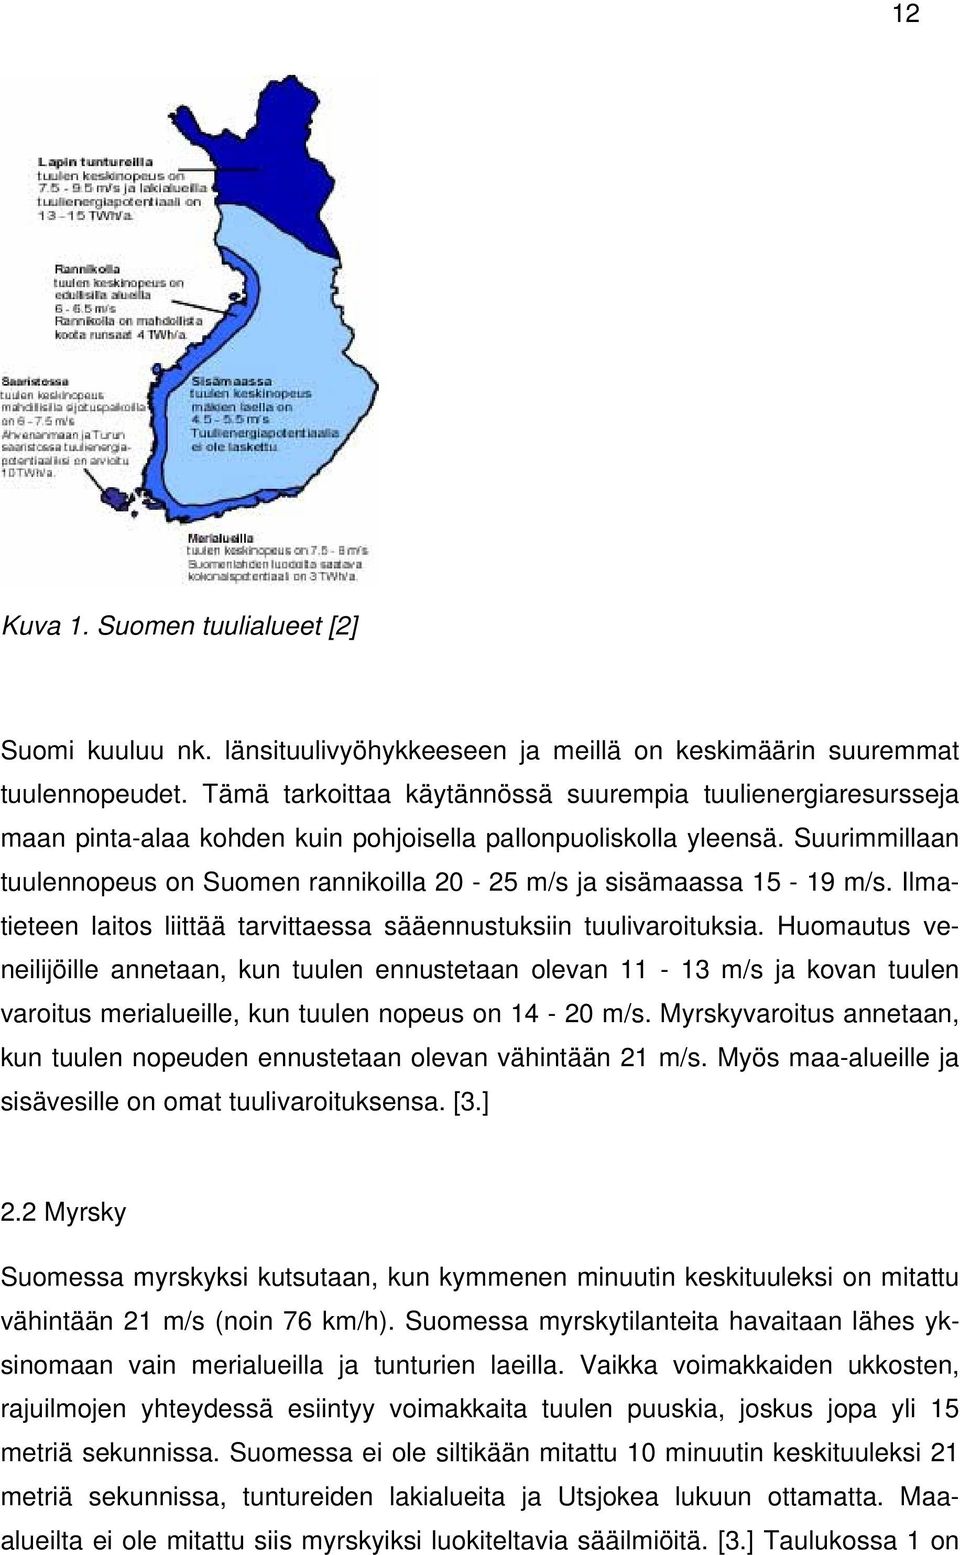 Suurimmillaan tuulennopeus on Suomen rannikoilla 20-25 m/s ja sisämaassa 15-19 m/s. Ilmatieteen laitos liittää tarvittaessa sääennustuksiin tuulivaroituksia.